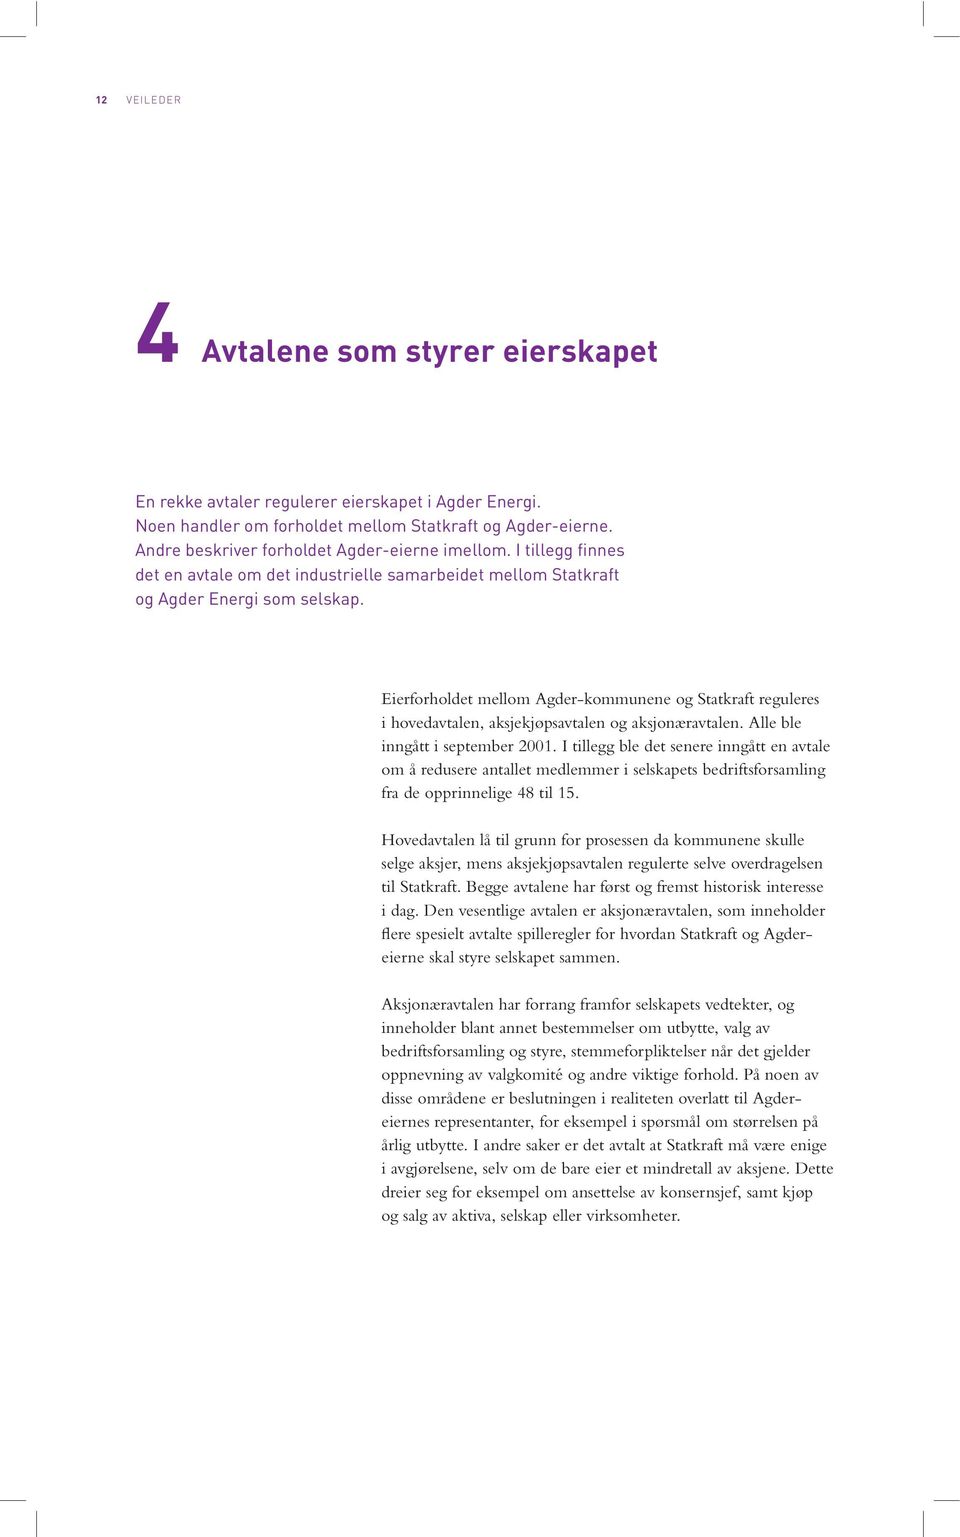 Eierforholdet mellom Agder-kommunene og Statkraft reguleres i hovedavtalen, aksjekjøpsavtalen og aksjonæravtalen. Alle ble inngått i september 2001.